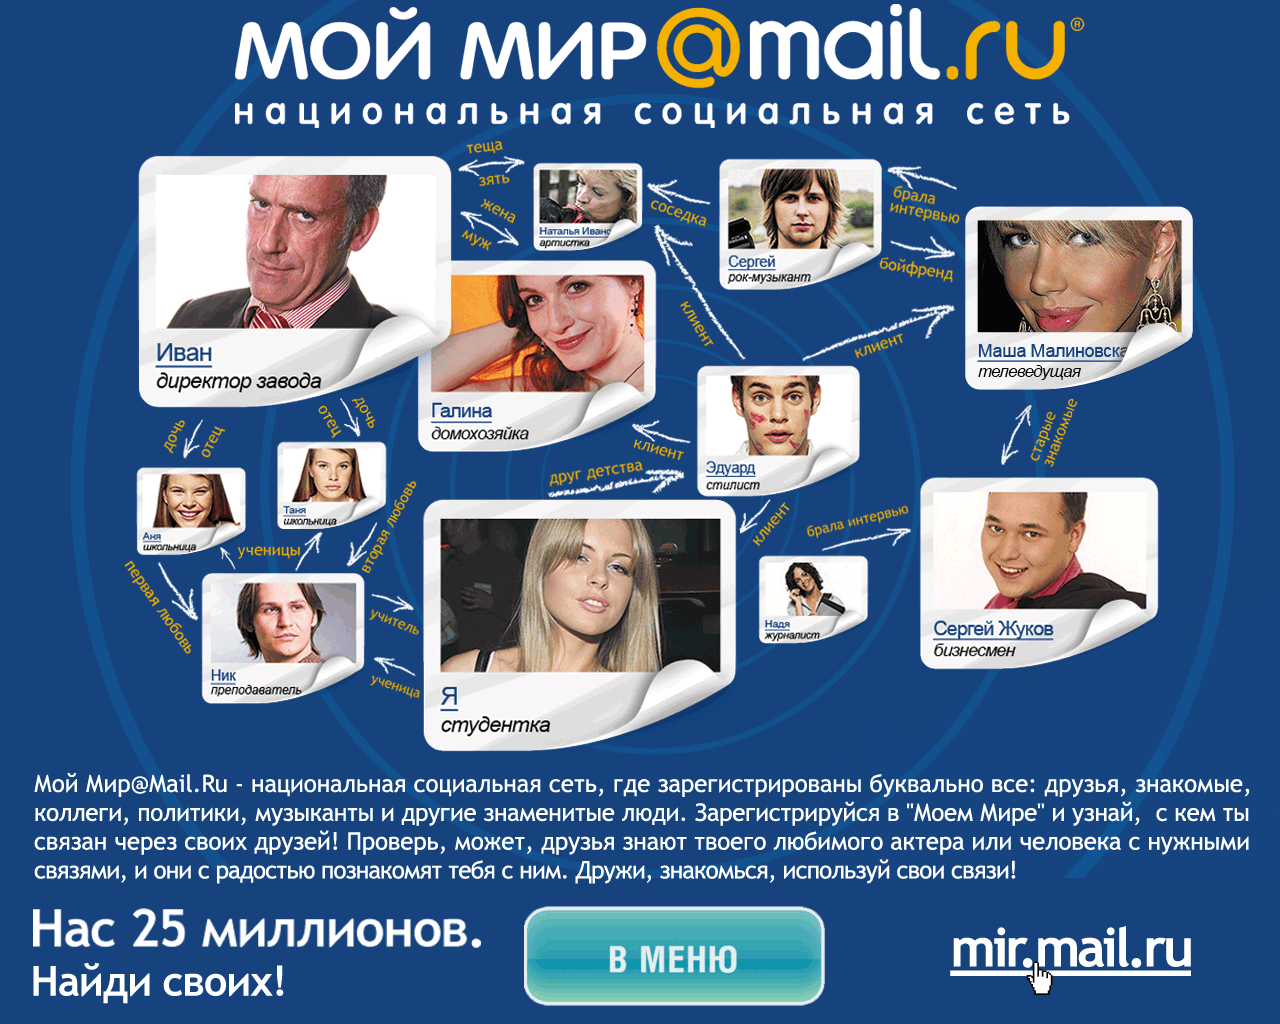 Ооо социальная сеть. Мой мир. Мой мир@mail.ru. Соц сеть мой мир. Мой мир майл.